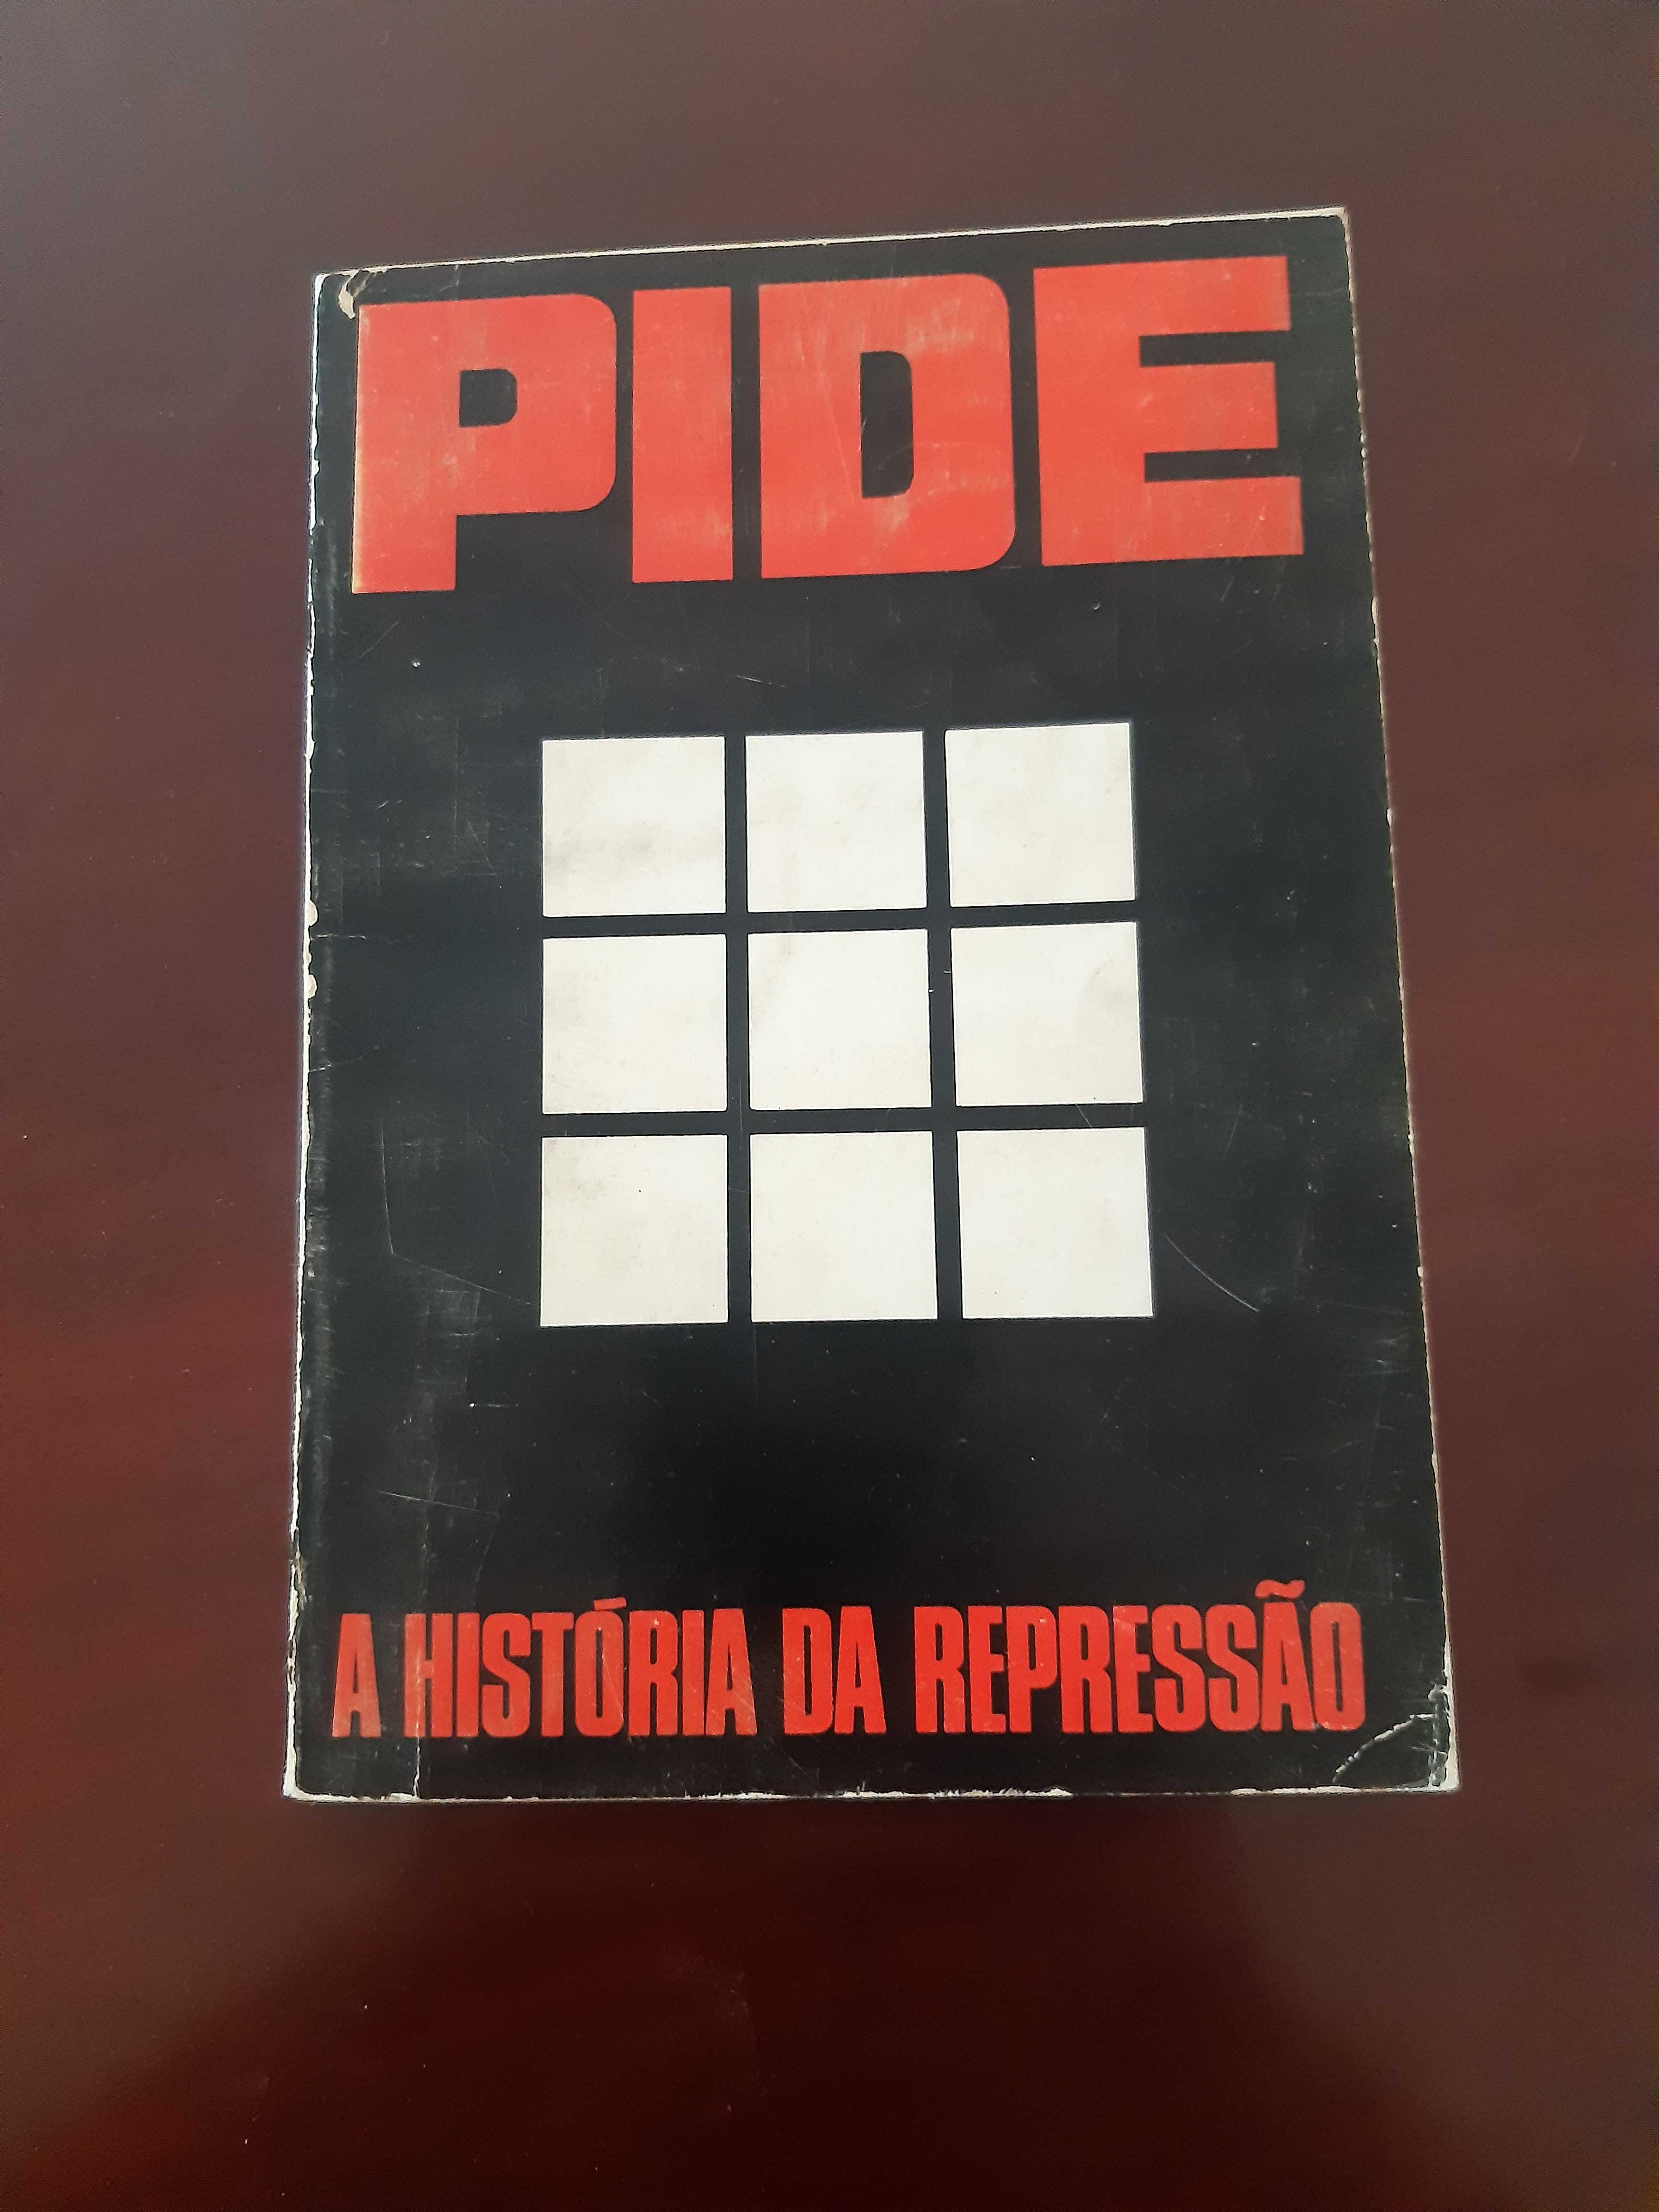 Livro Antigo "PIDE - A História da Repressão" 1974